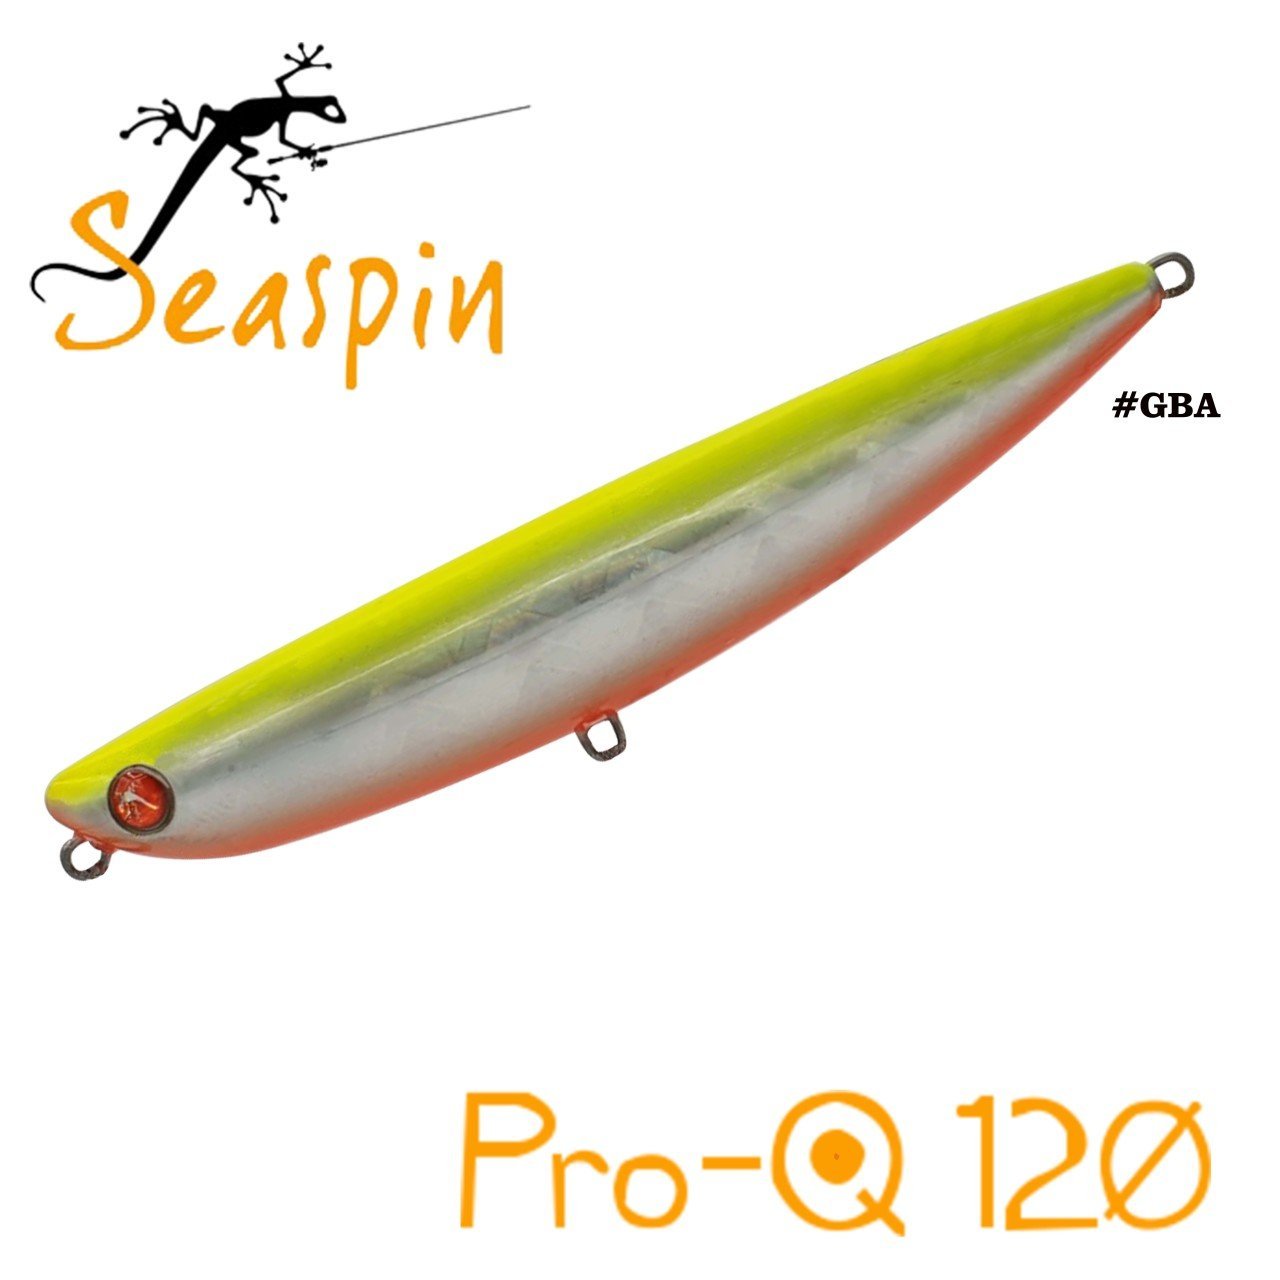 Seaspin Pro-Q 120 120mm 27gr GBA